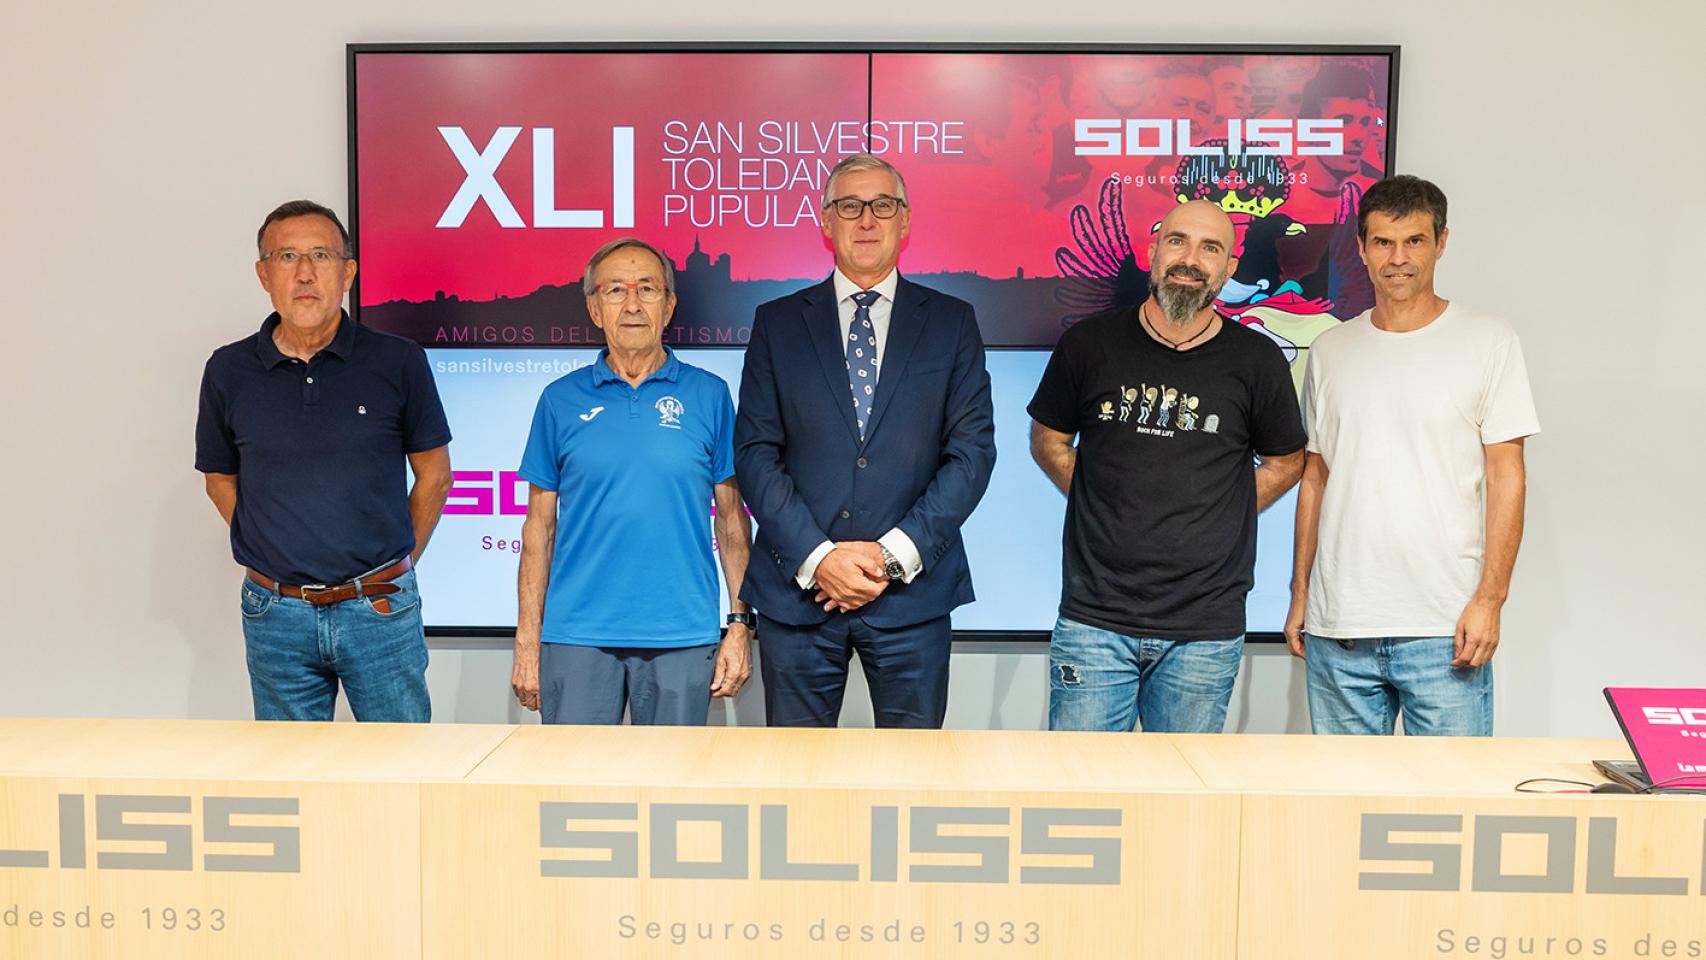 Soliss, nuevo patrocinador principal de la San Silvestre toledana